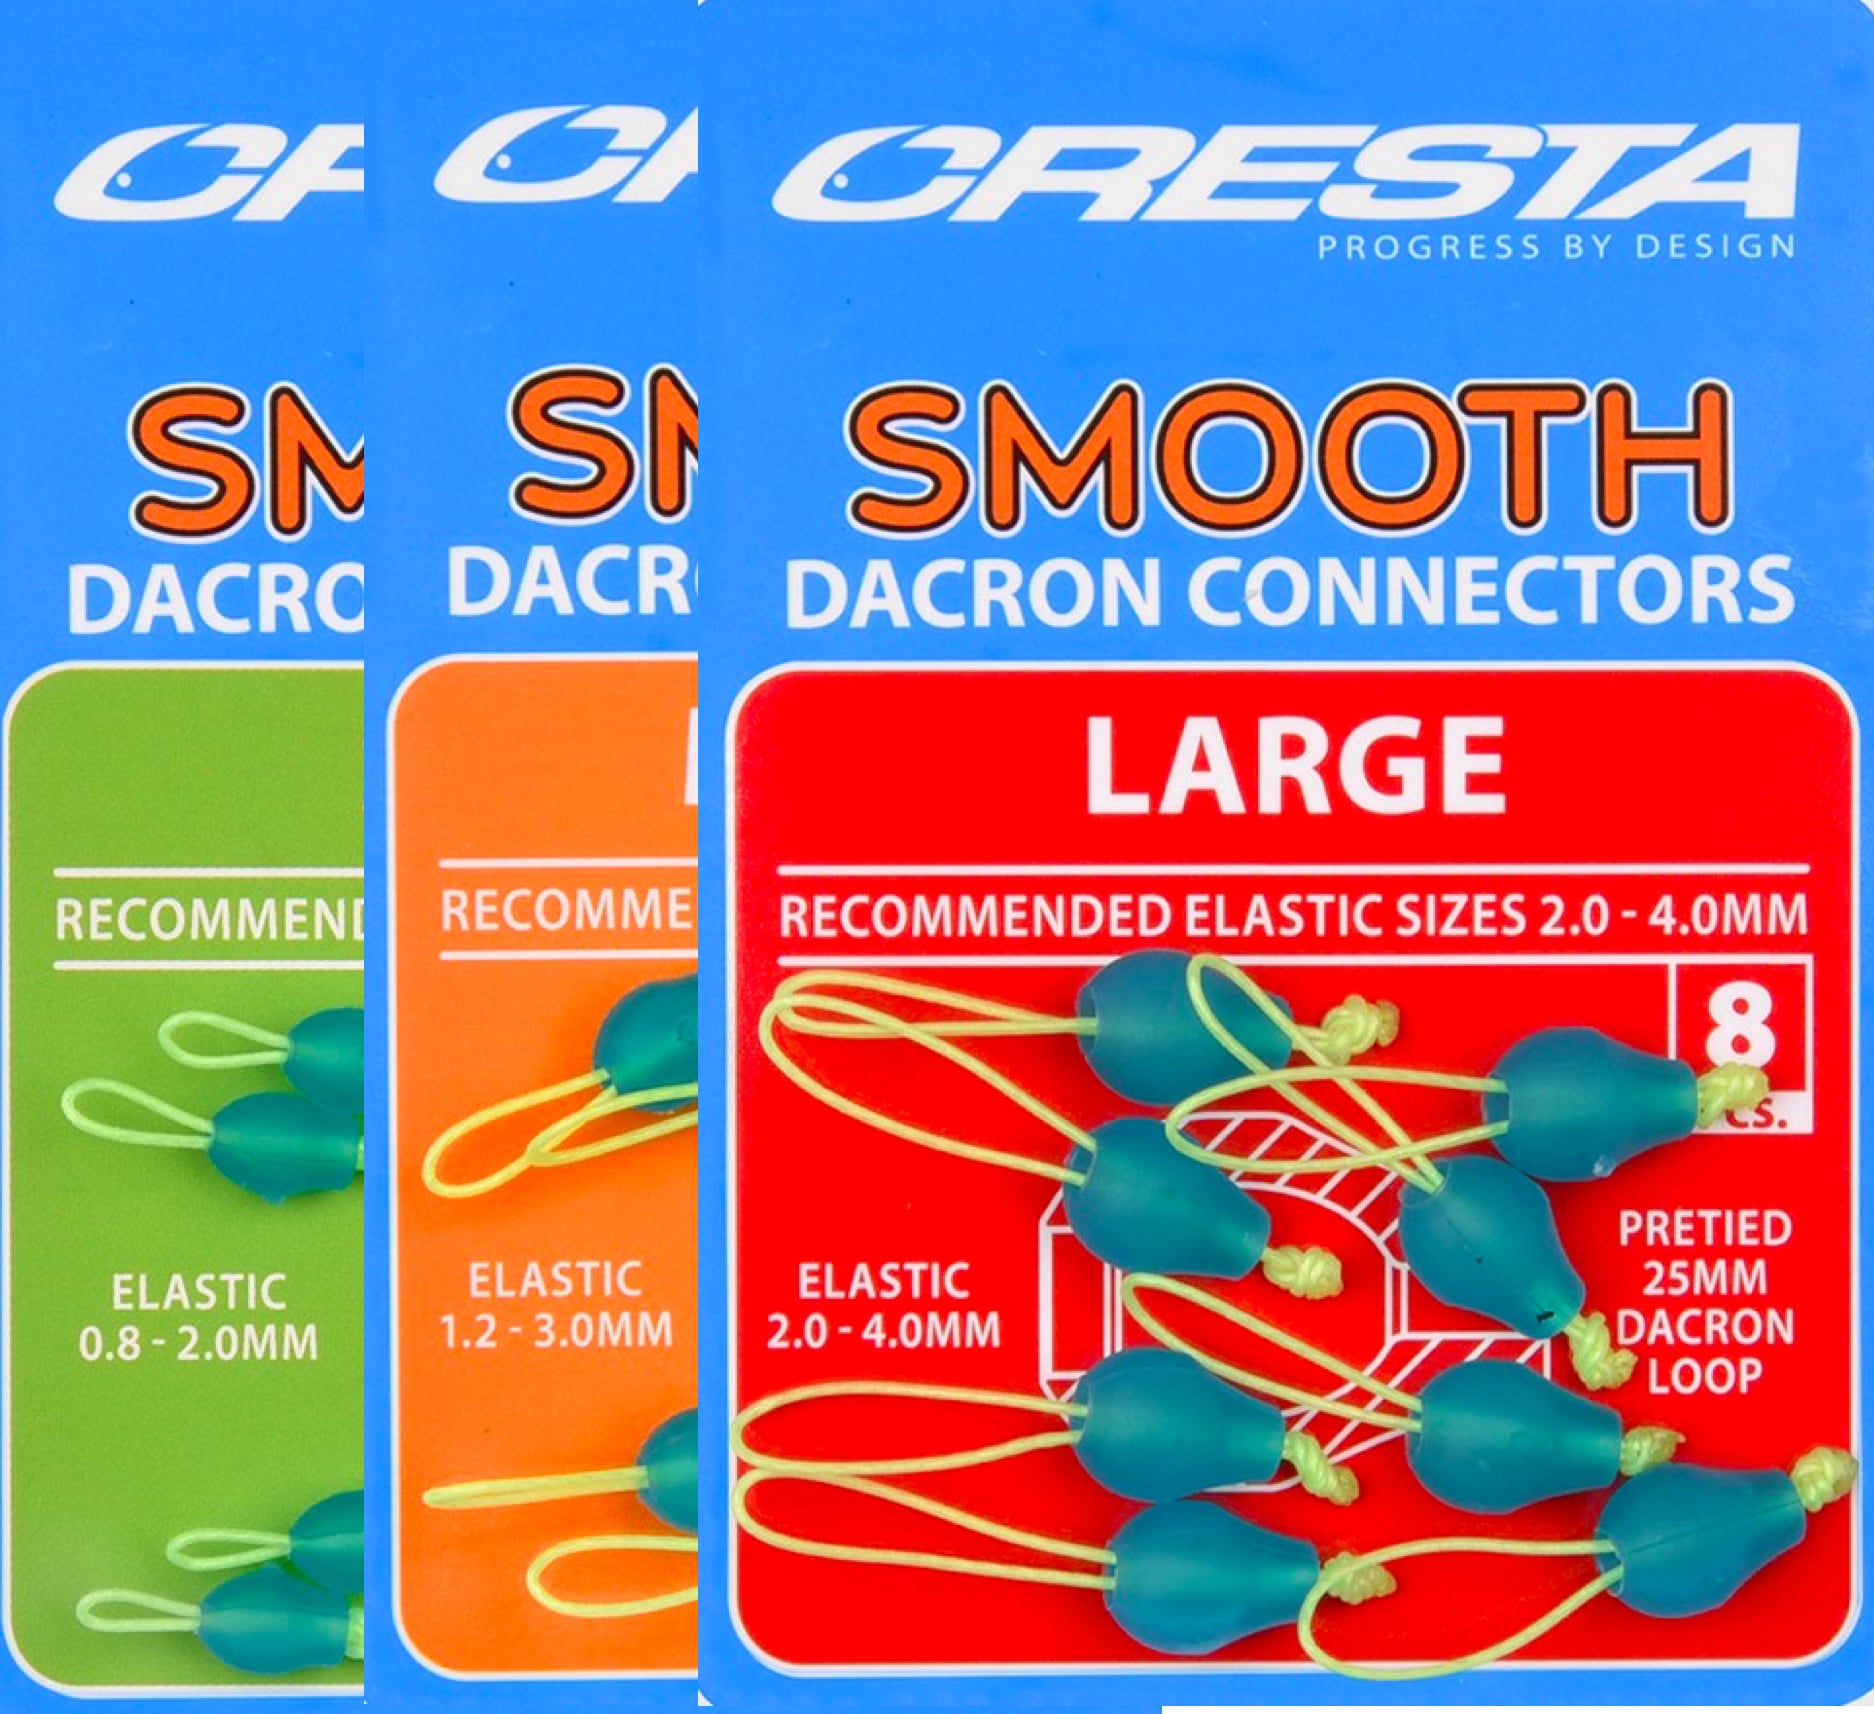 SMOOTH DACRON CONNECTORS